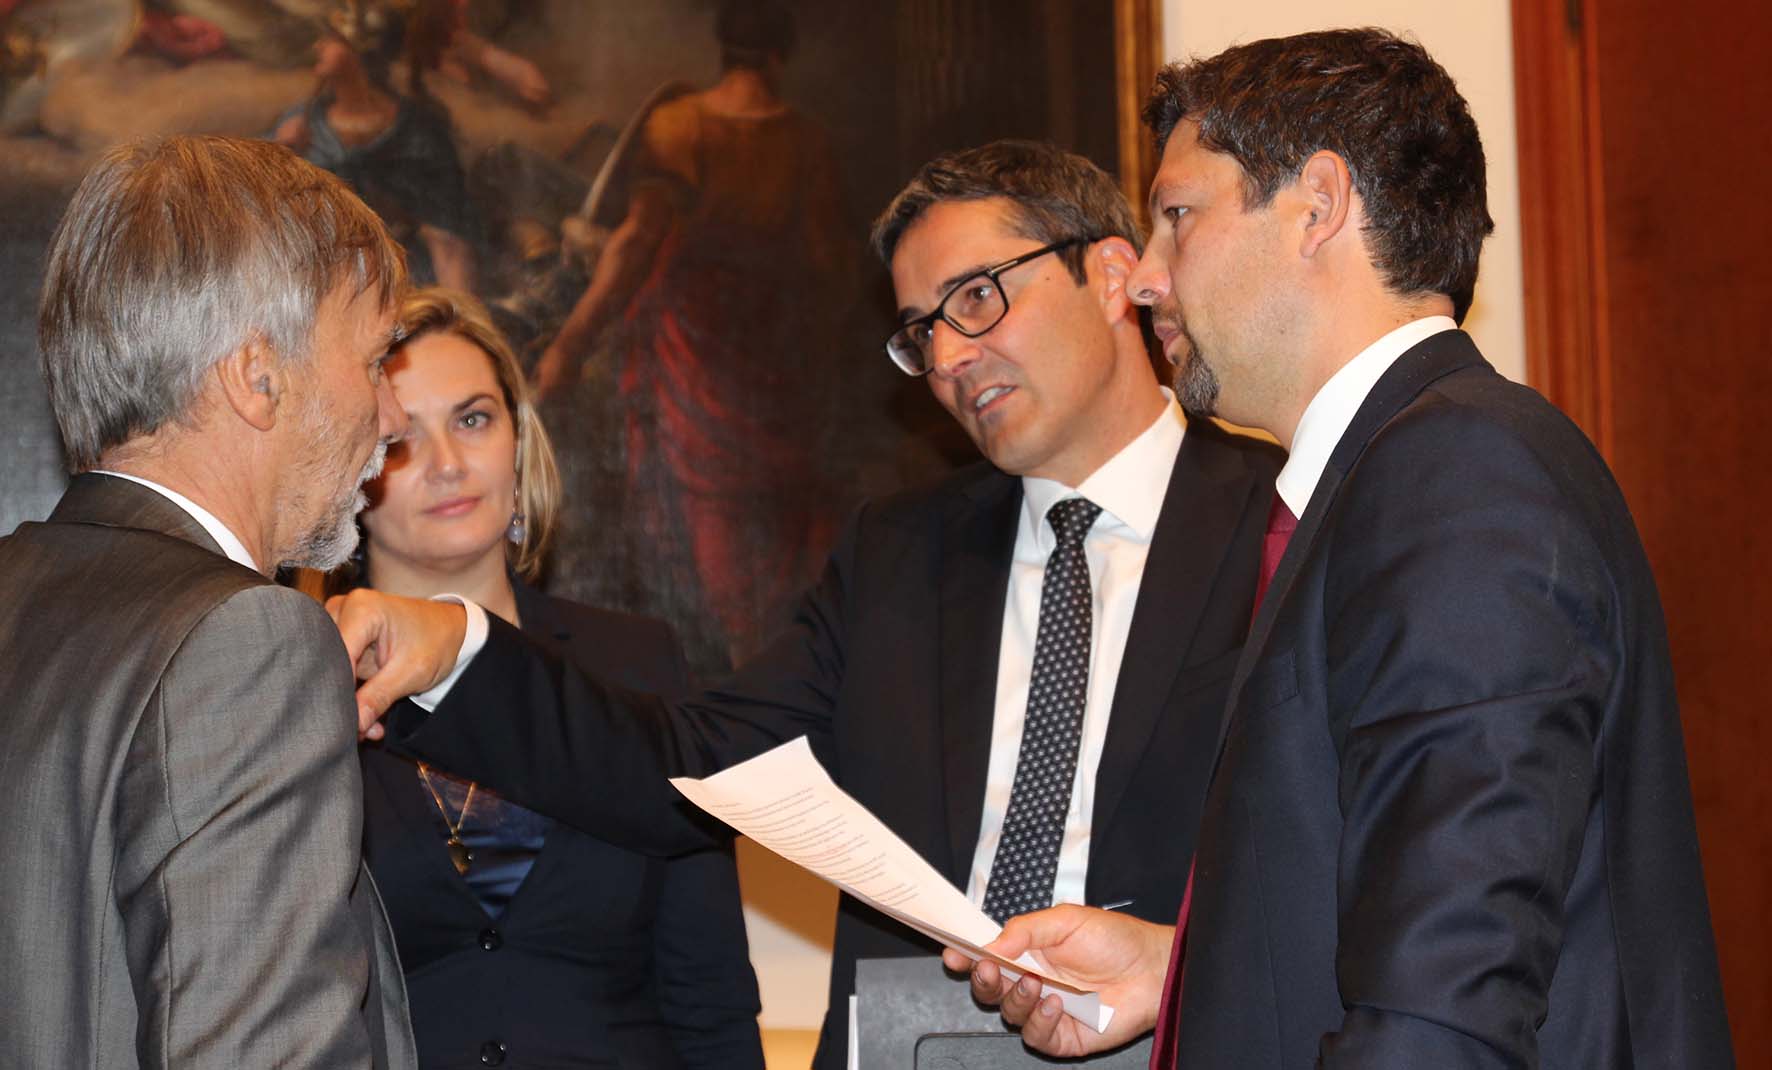 Kompatscher e i parlamentari Alfreider e Gebhard a colloquio con il Ministro Delrio